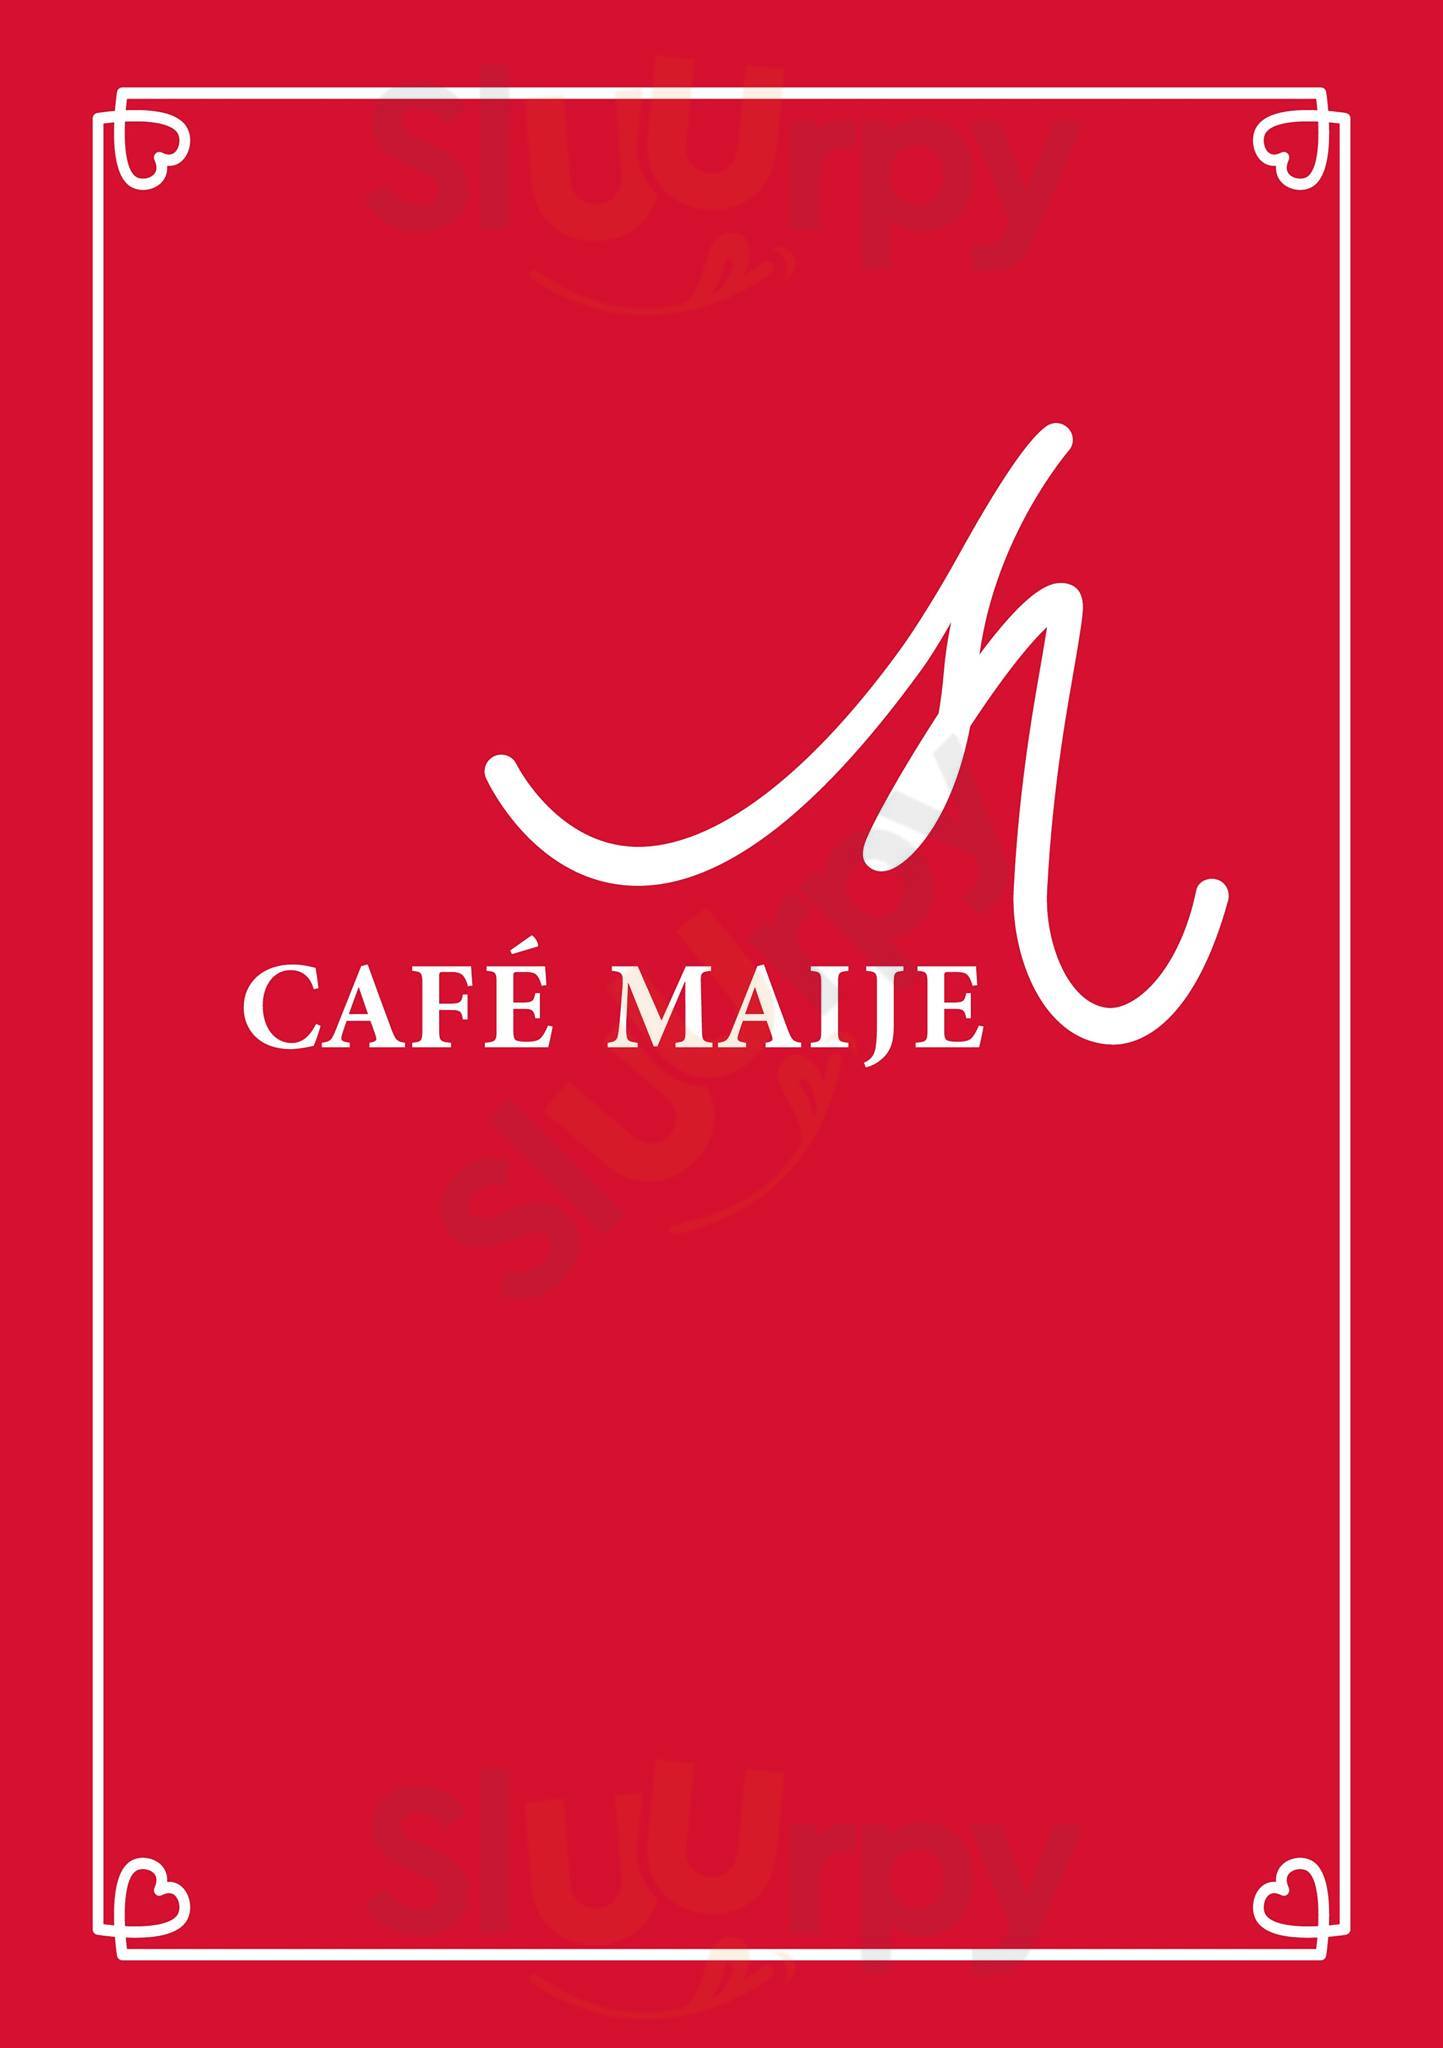 Café Maije Mannheim Menu - 1